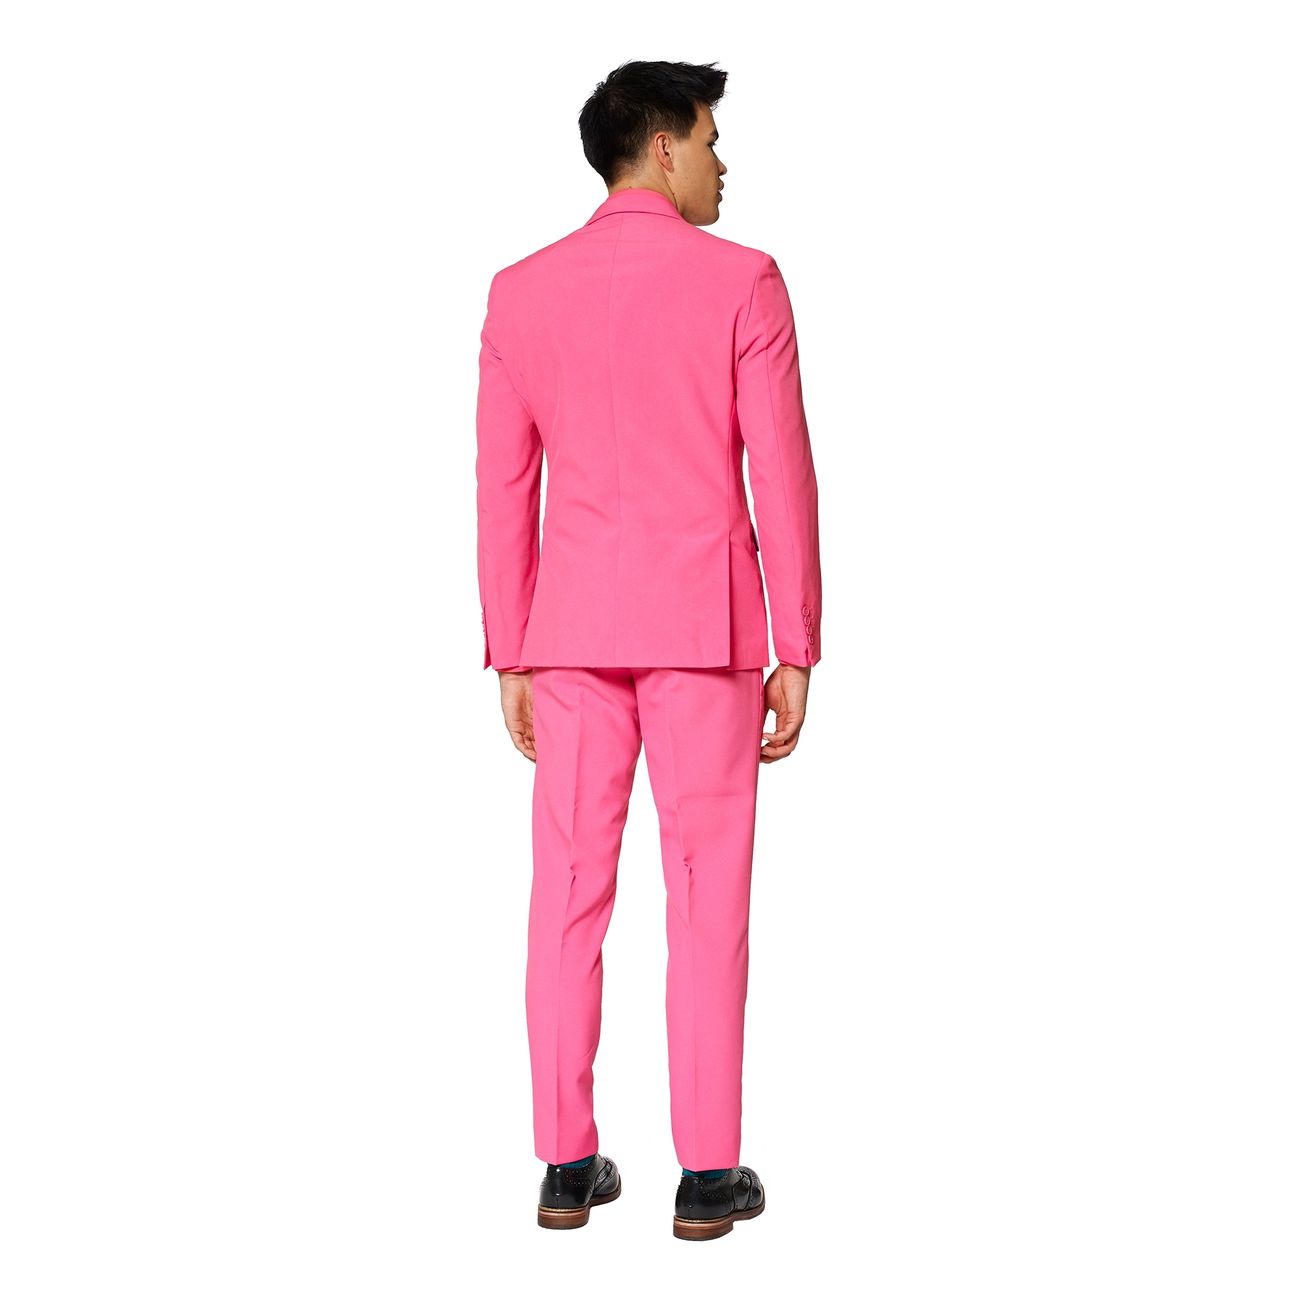 opposuits-mr-pink-kostym-16981-11